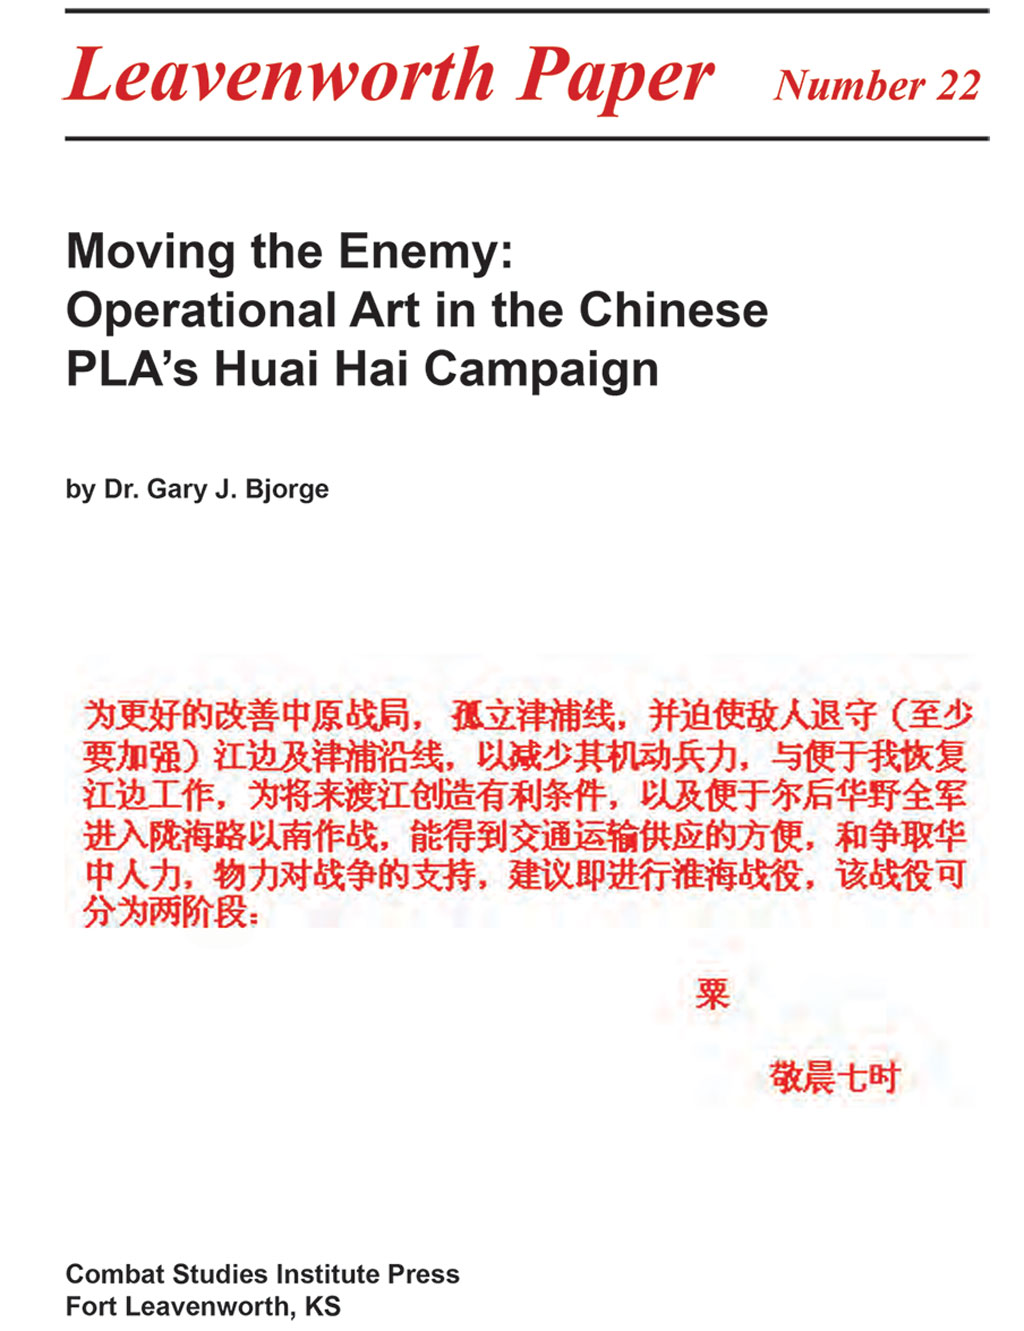 Movendo o Inimigo: Arte Operacional na Campanha Huai Hai do ELP Chinês